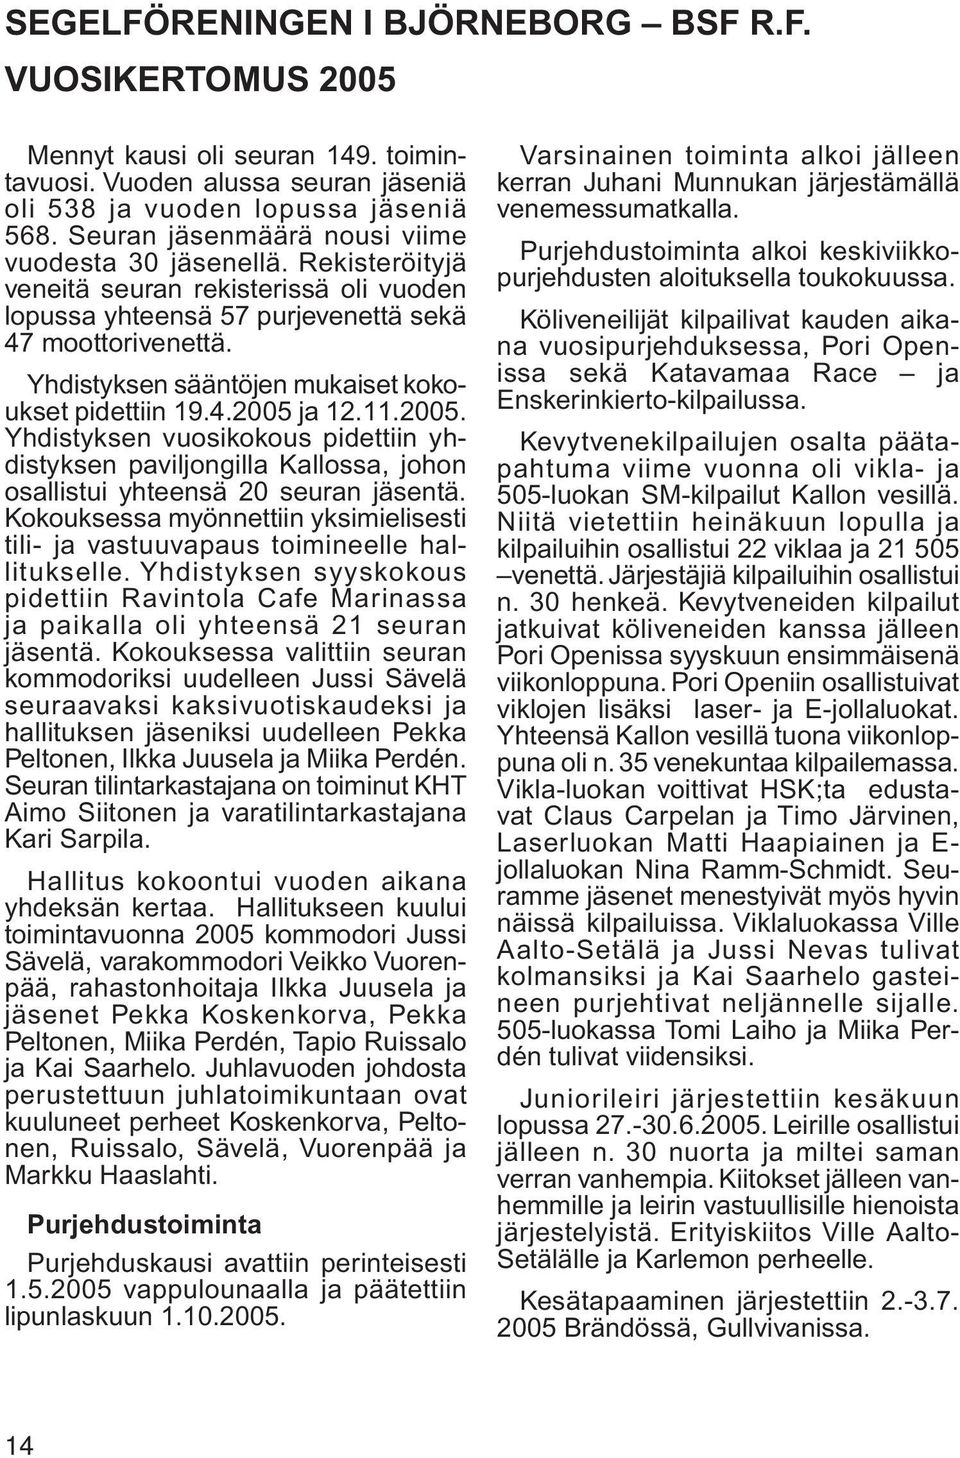 Yhdistyksen sääntöjen mukaiset kokoukset pidettiin 19.4.2005 ja 12.11.2005. Yhdistyksen vuosikokous pidettiin yhdistyksen paviljongilla Kallossa, johon osallistui yhteensä 20 seuran jäsentä.